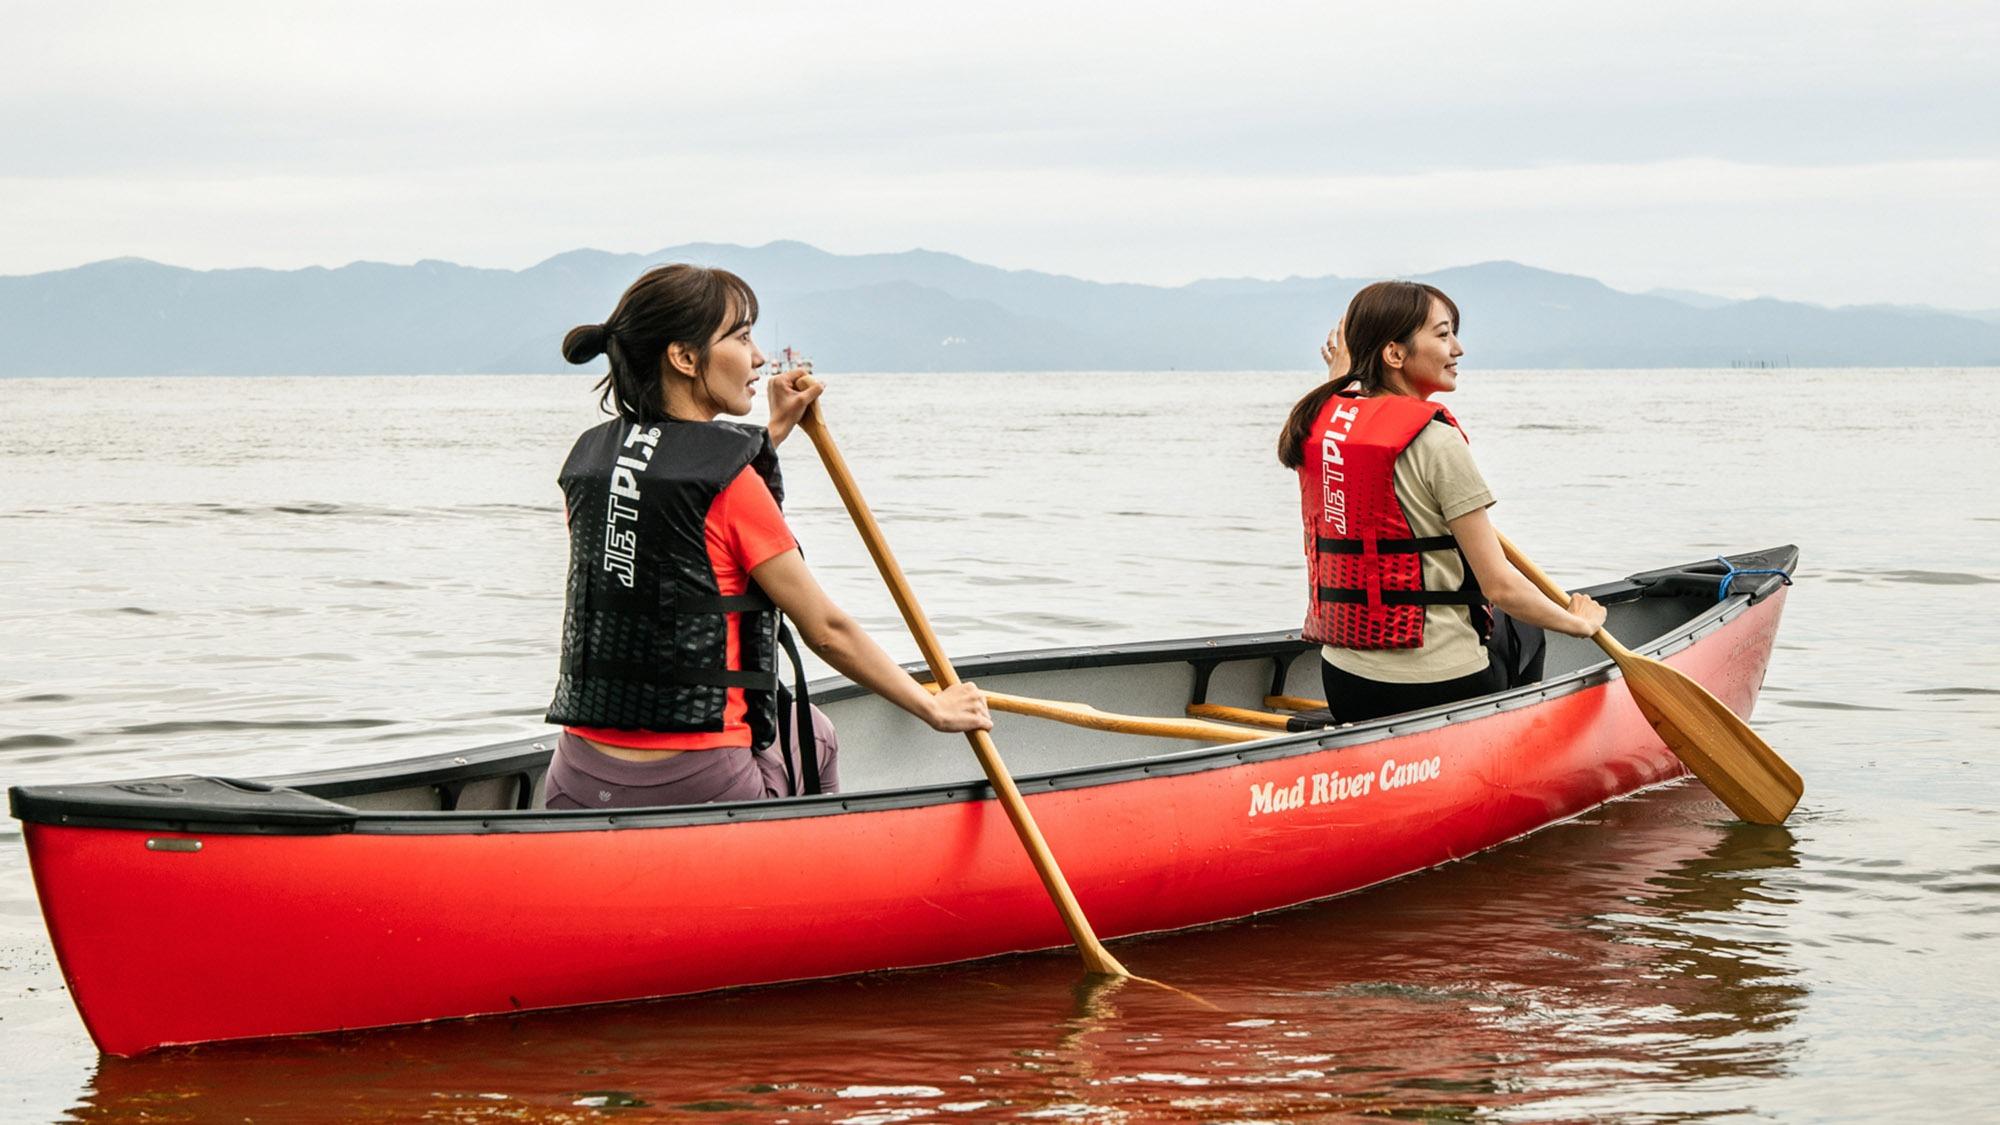 ・【カヌー】広大な琵琶湖をカヌーで進む。澄んだ水の綺麗さに感動します